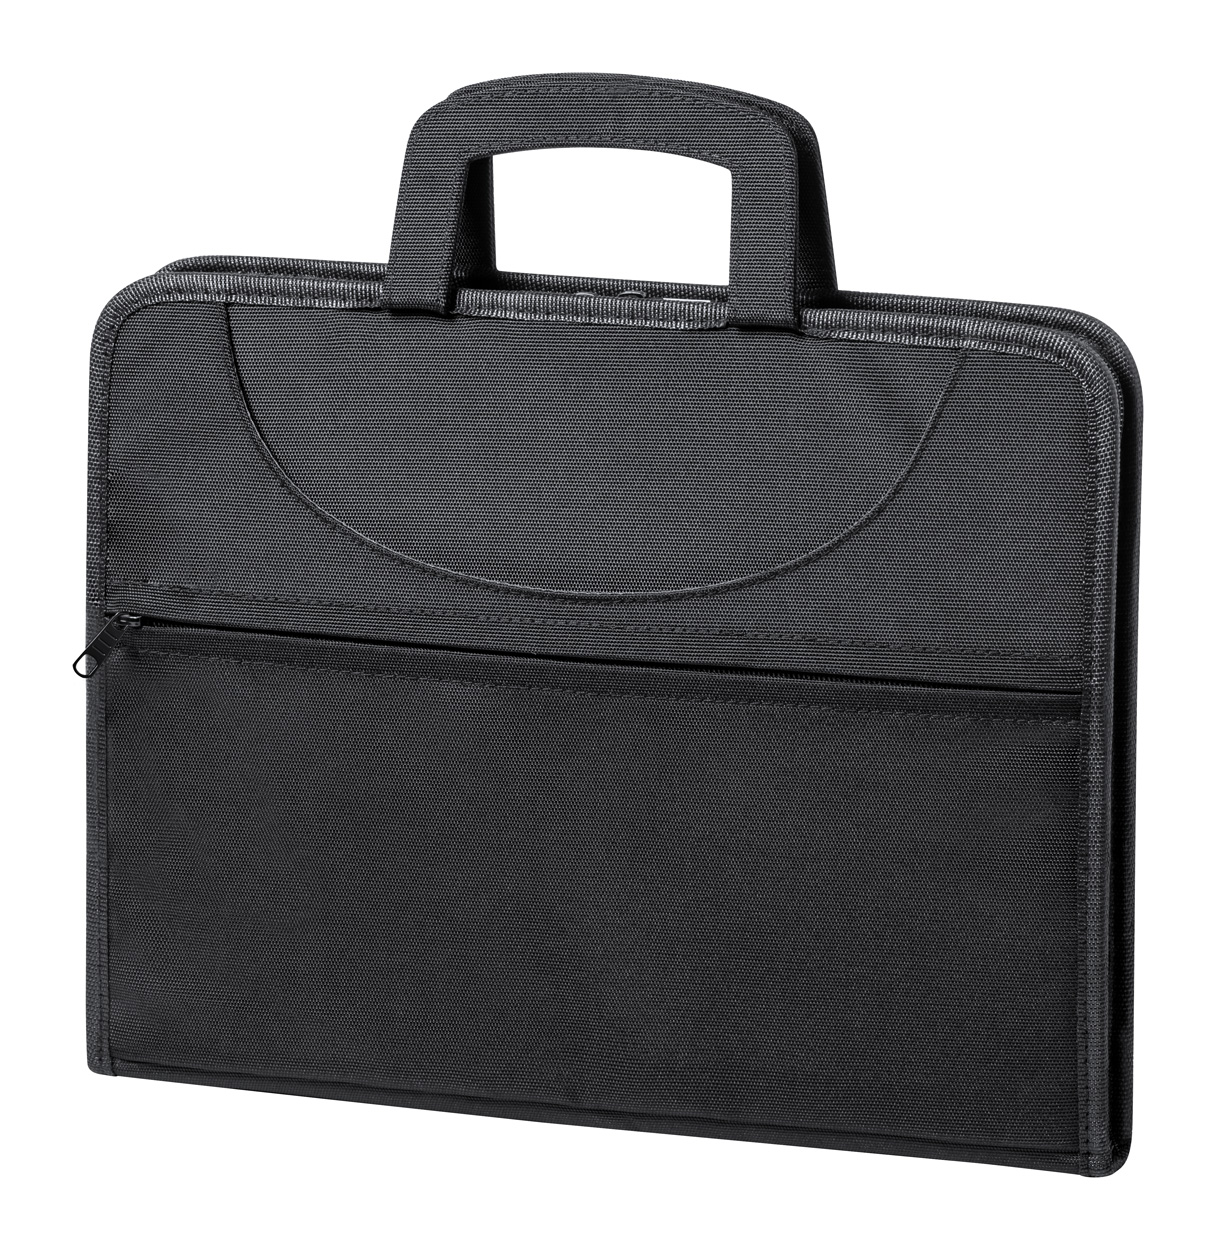 Wattan laptop briefcase - black